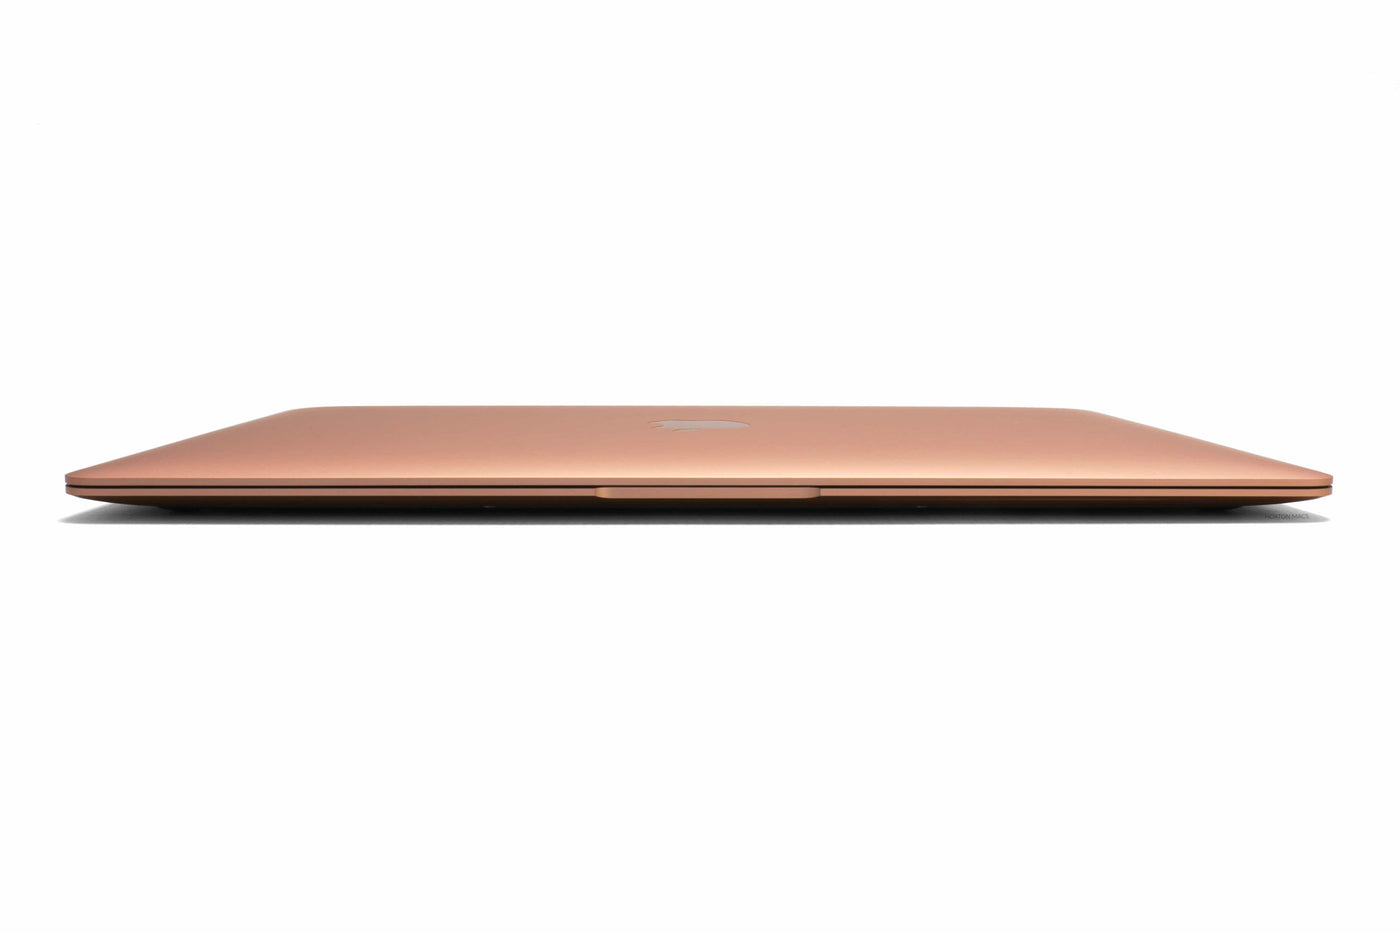 MacBook Air 13-inch Core i7 1.2GHz (Gold, 2020) - Fair